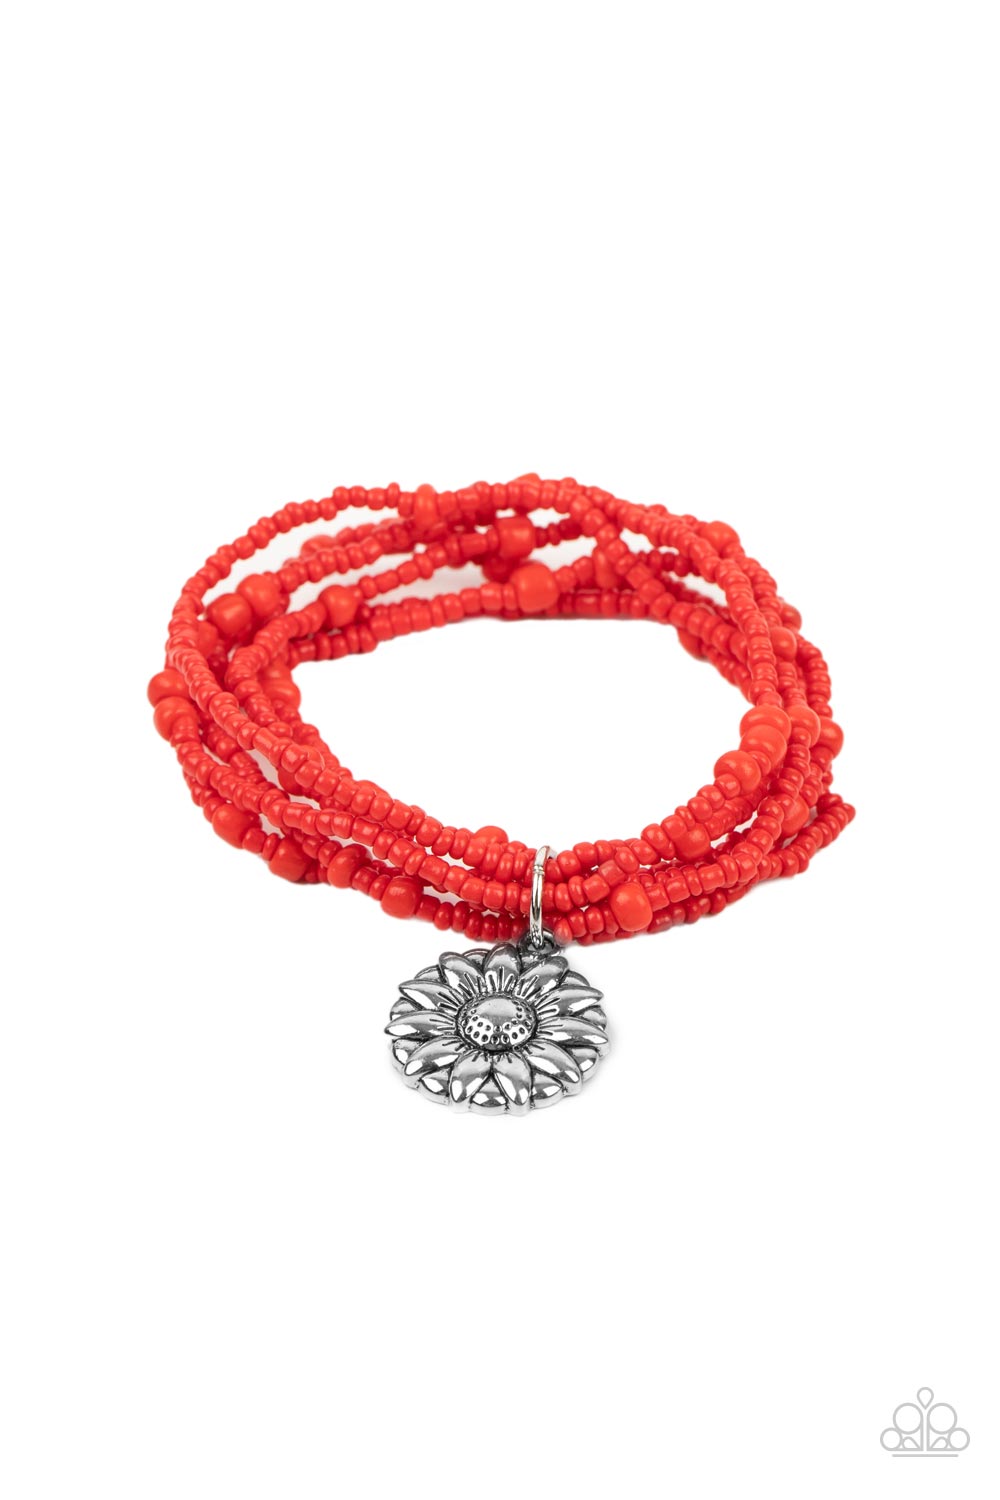 Badlands Botany - Red (Seed Bead) Bracelet freeshipping - JewLz4u Gemstone Gallery